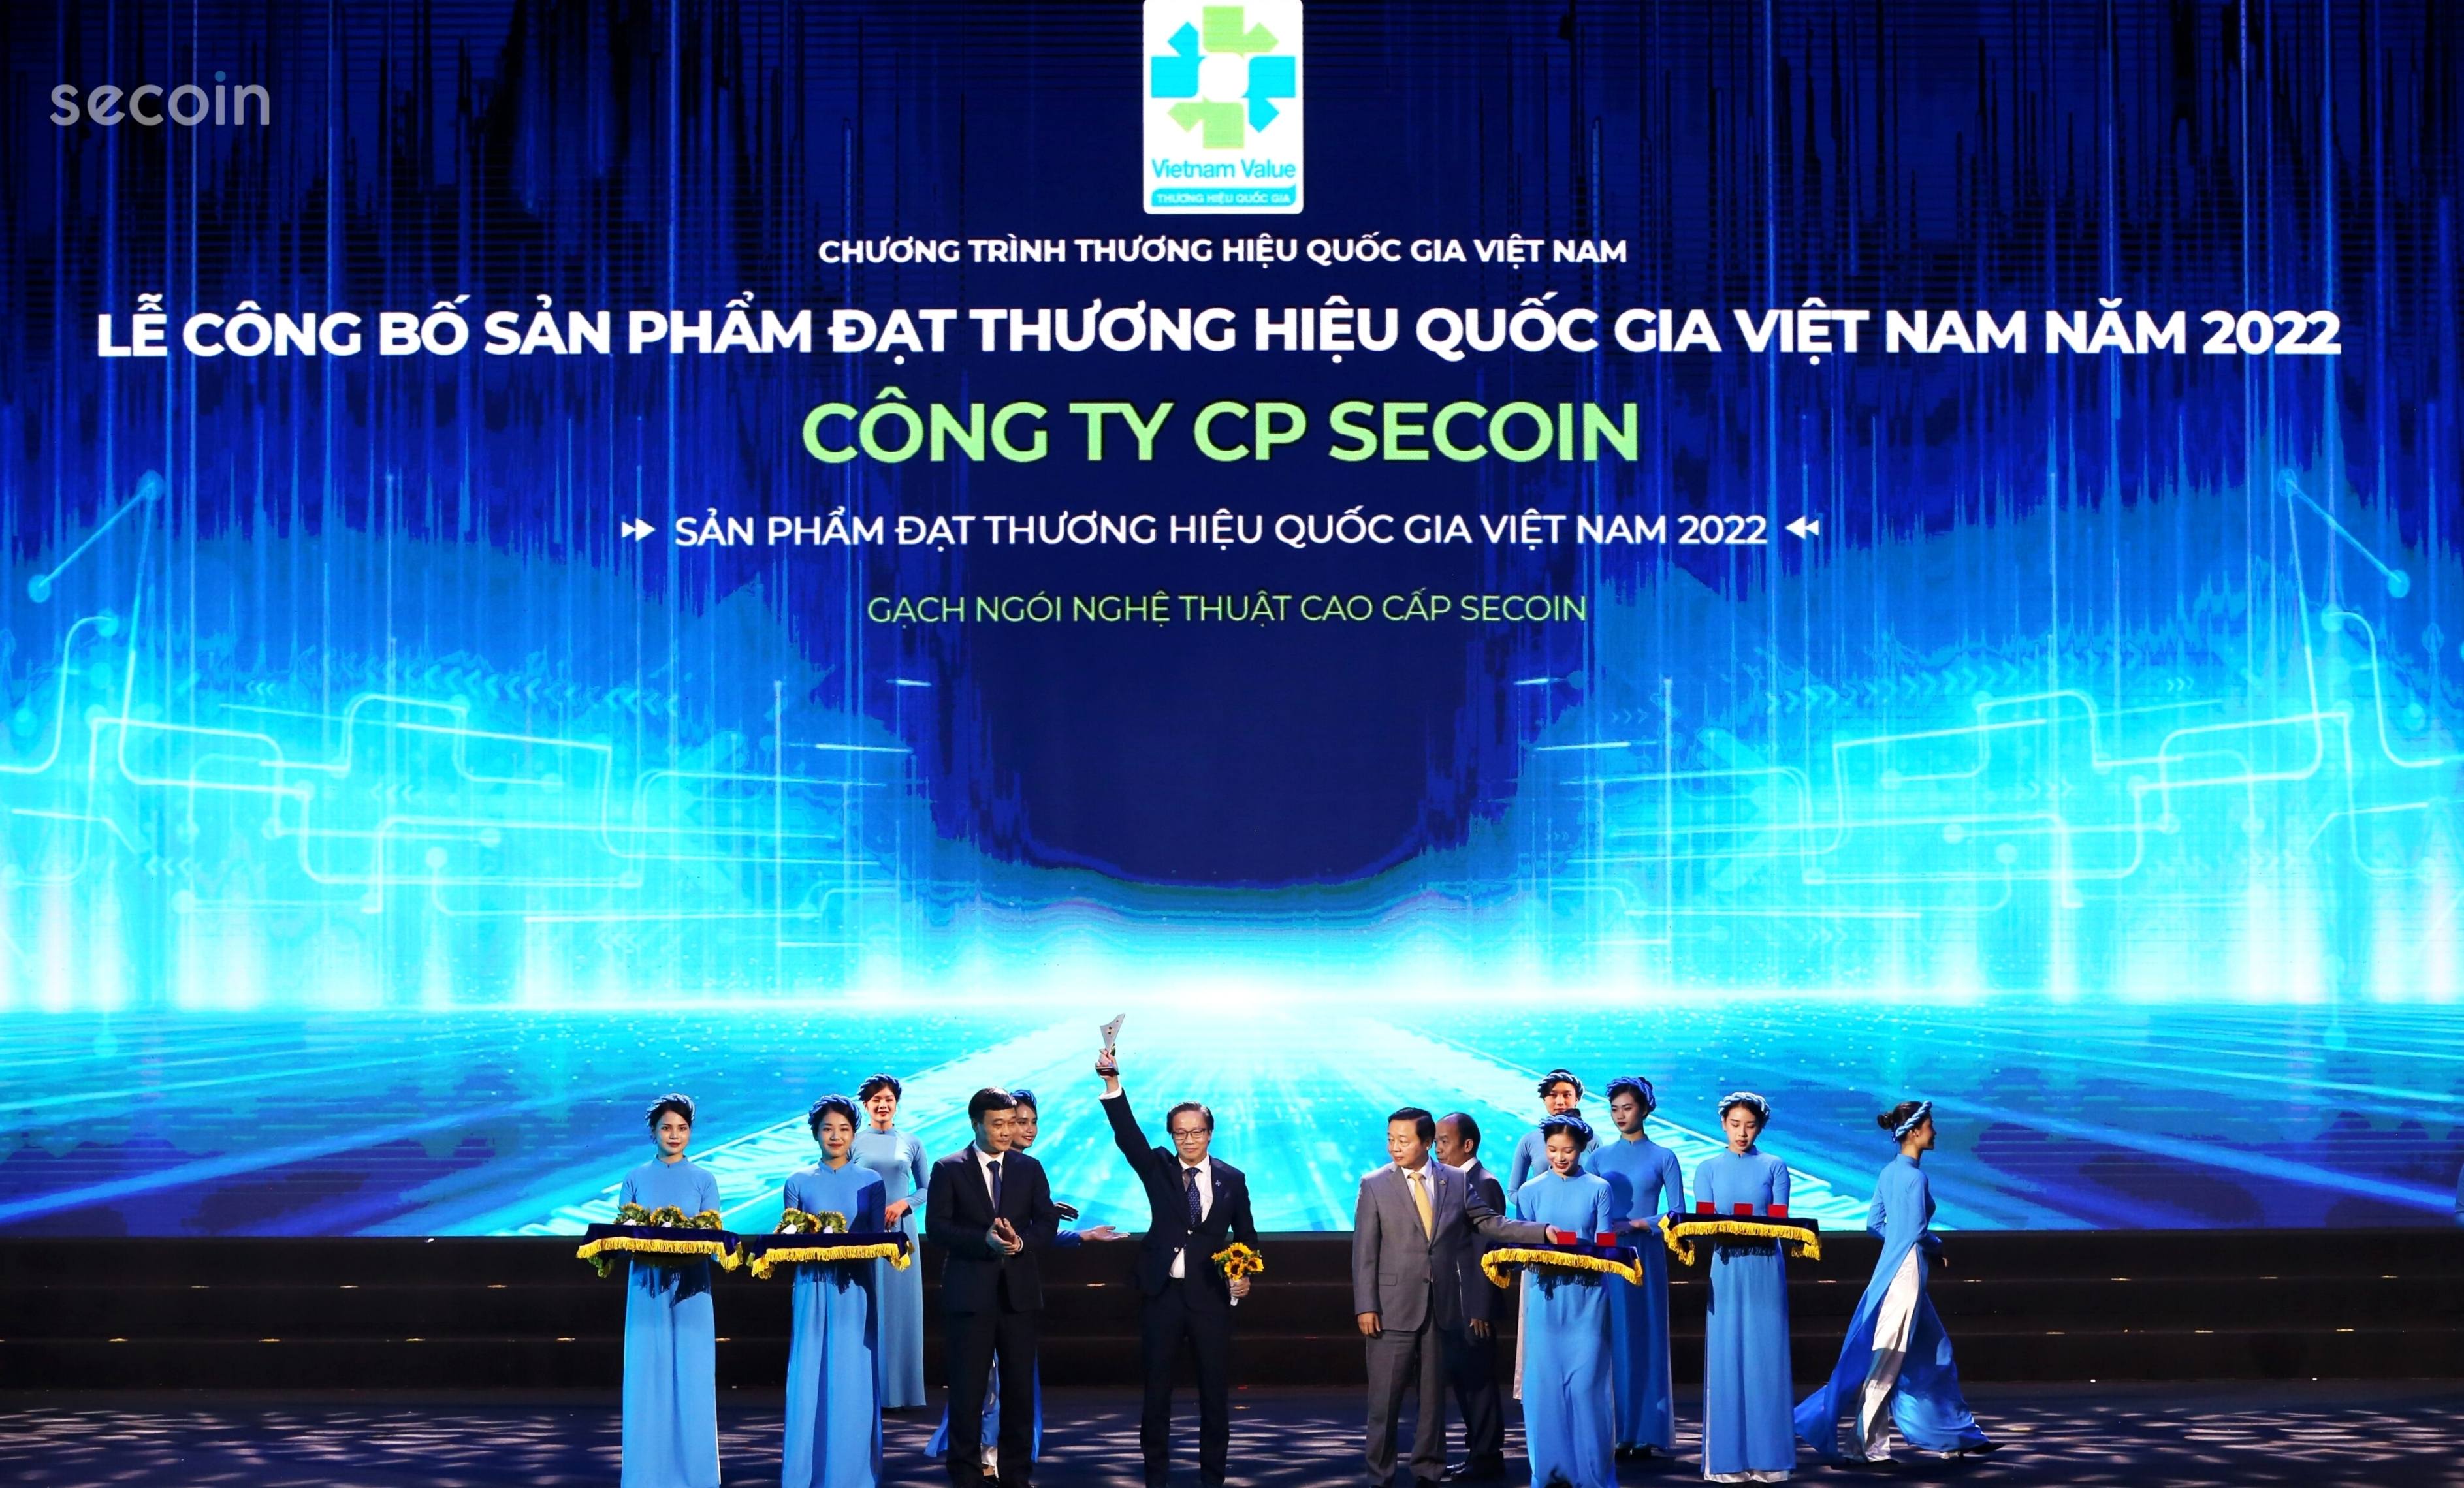 Secoin vinh dự được công nhận “Thương hiệu Quốc gia” của Việt Nam giai đoạn 2022-2024